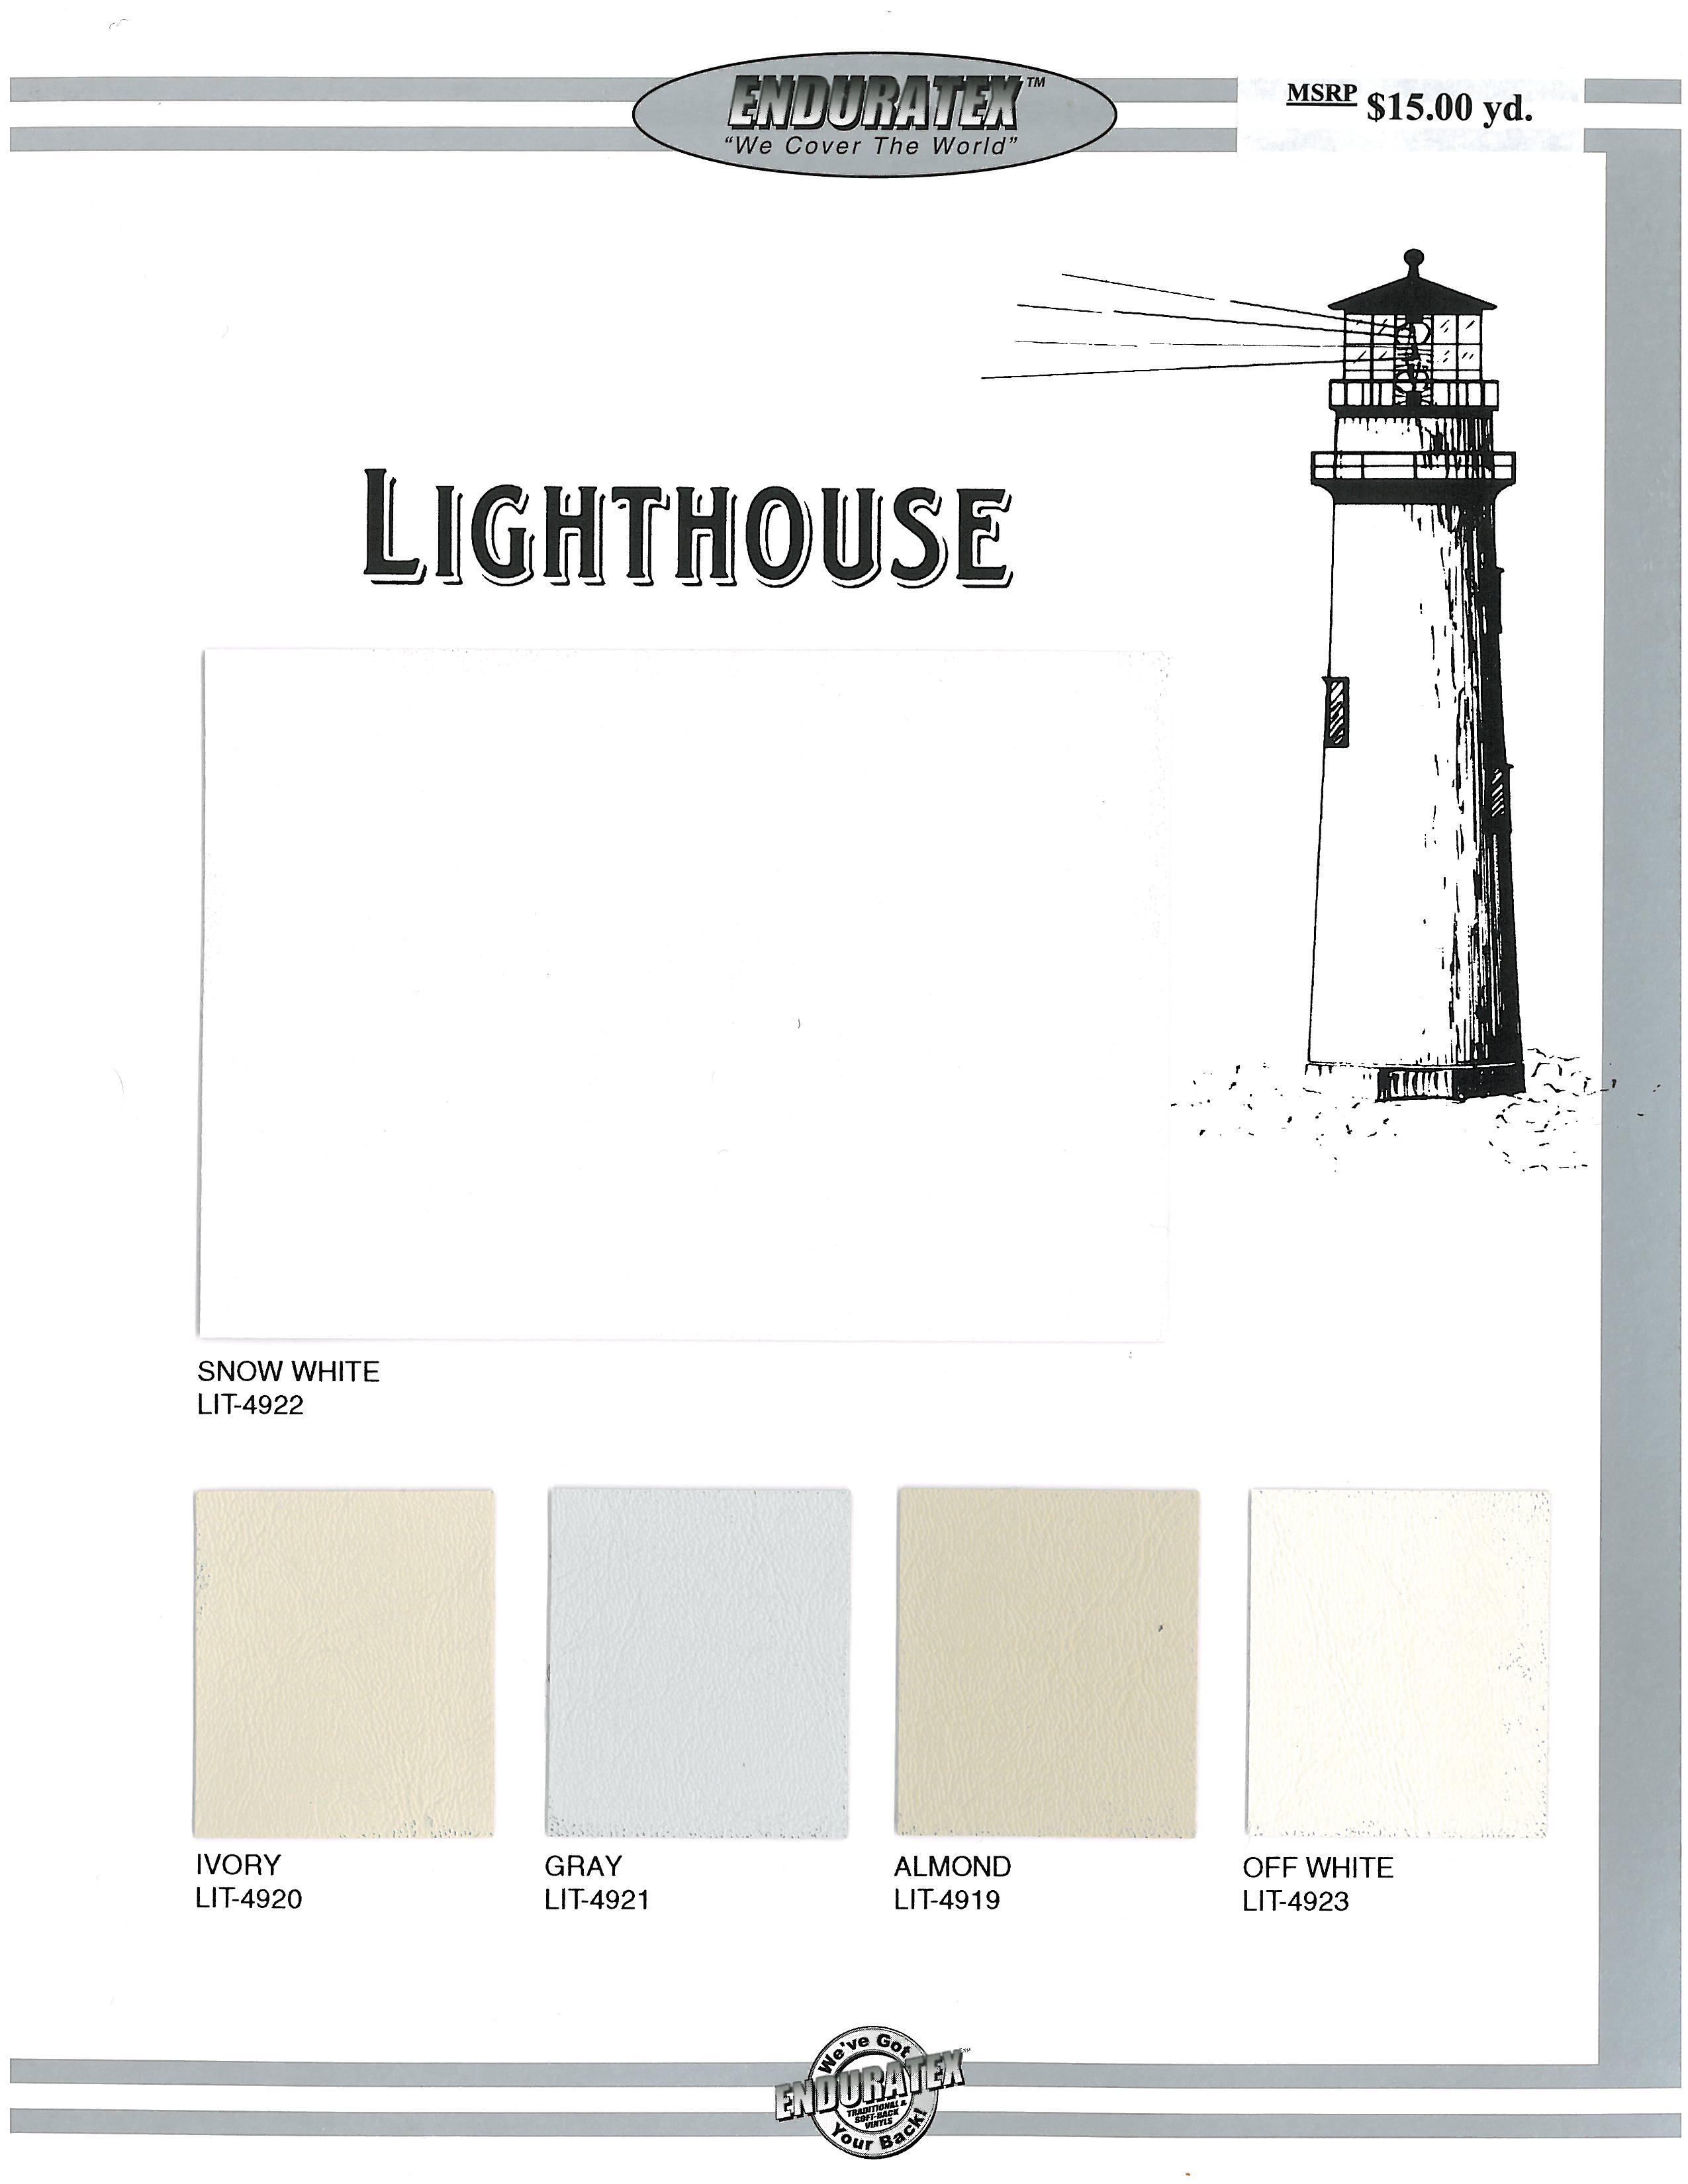 Sample Card - Lighthouse